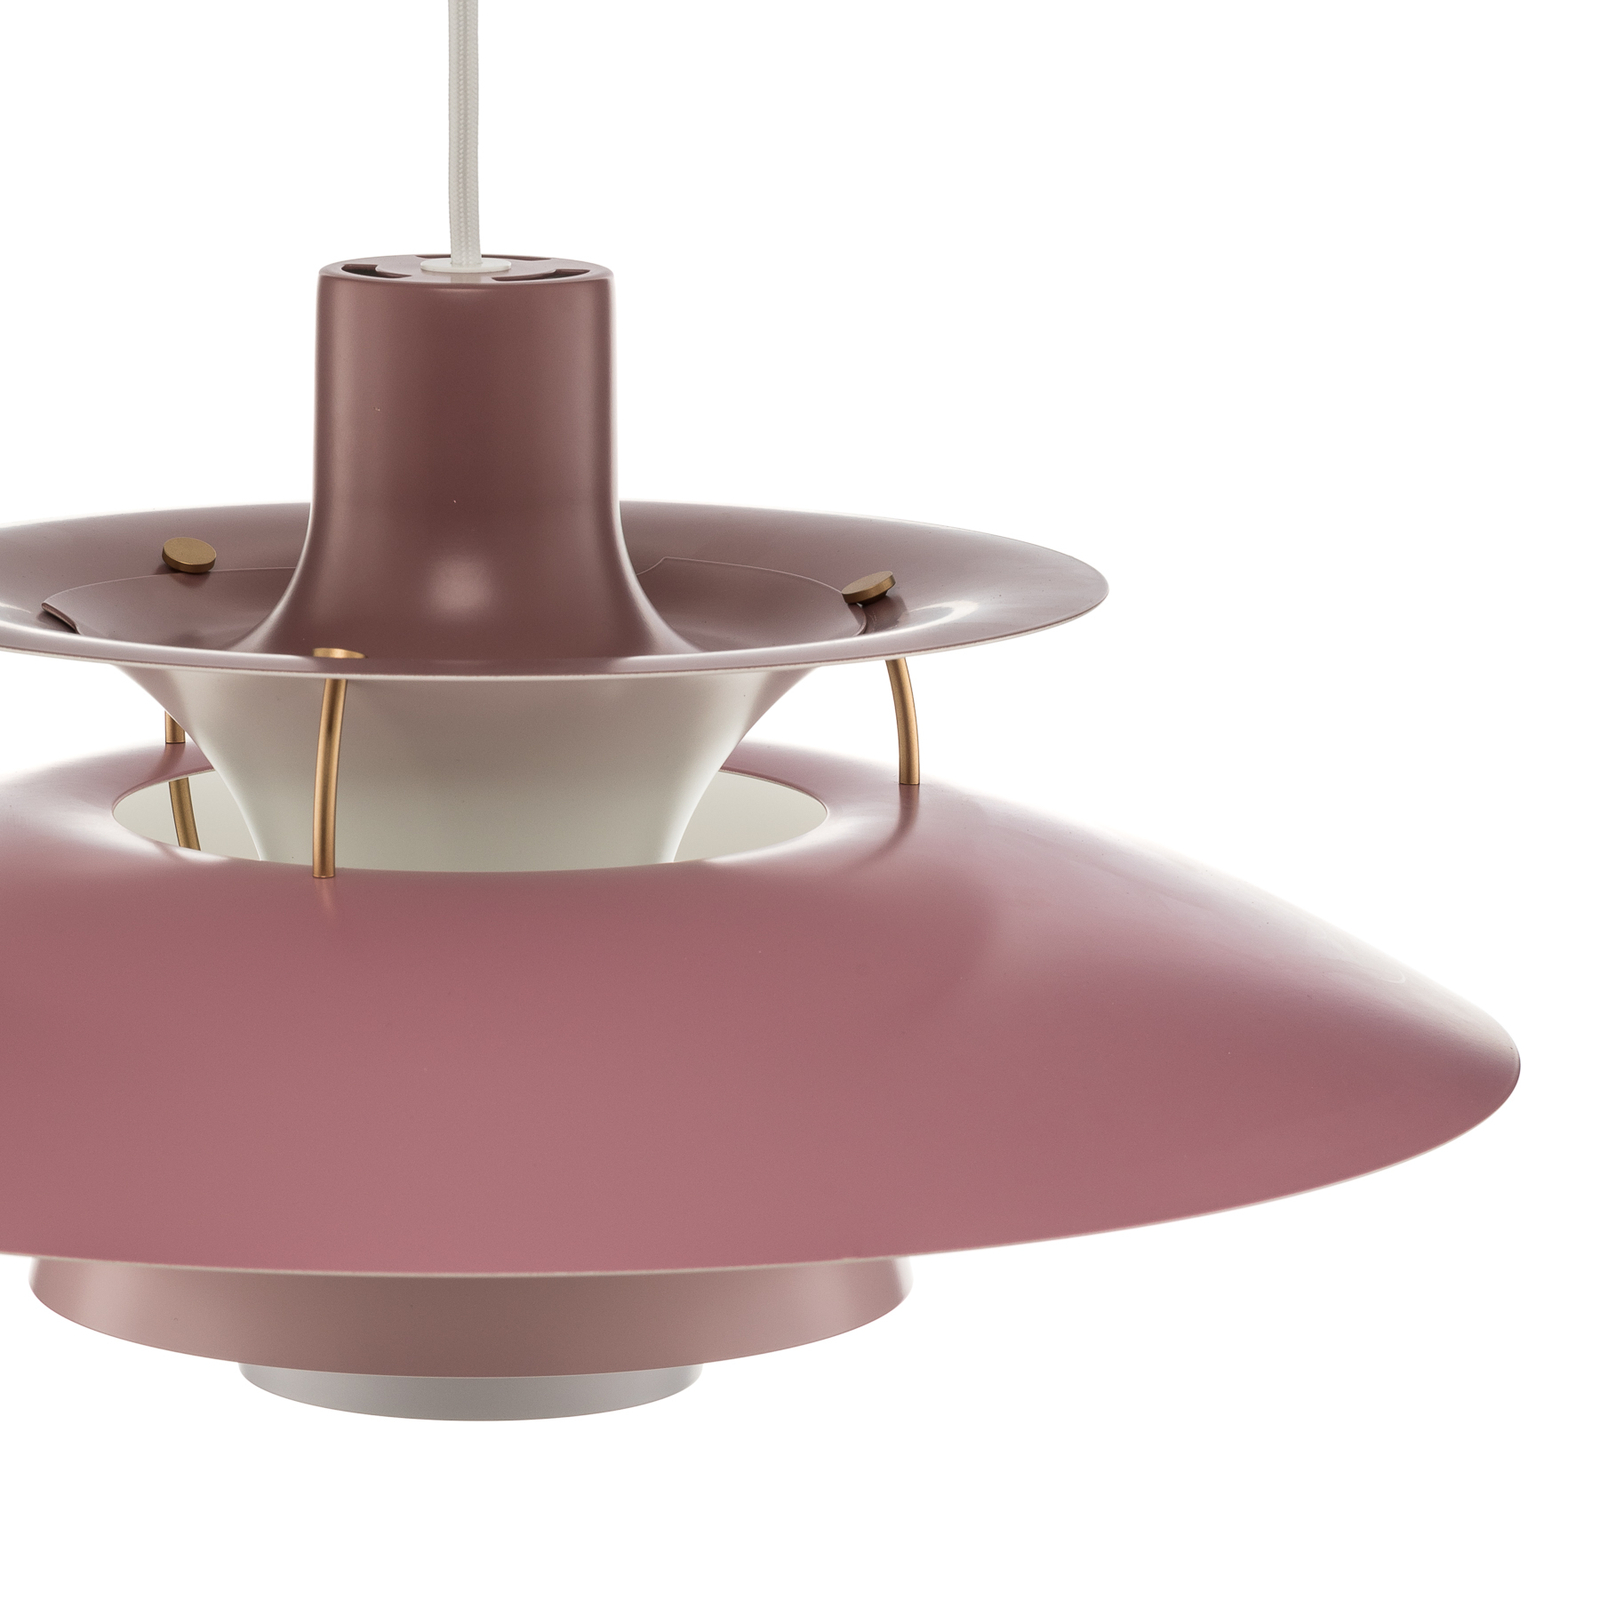 Louis Poulsen PH 5, designer pendant lamp pink